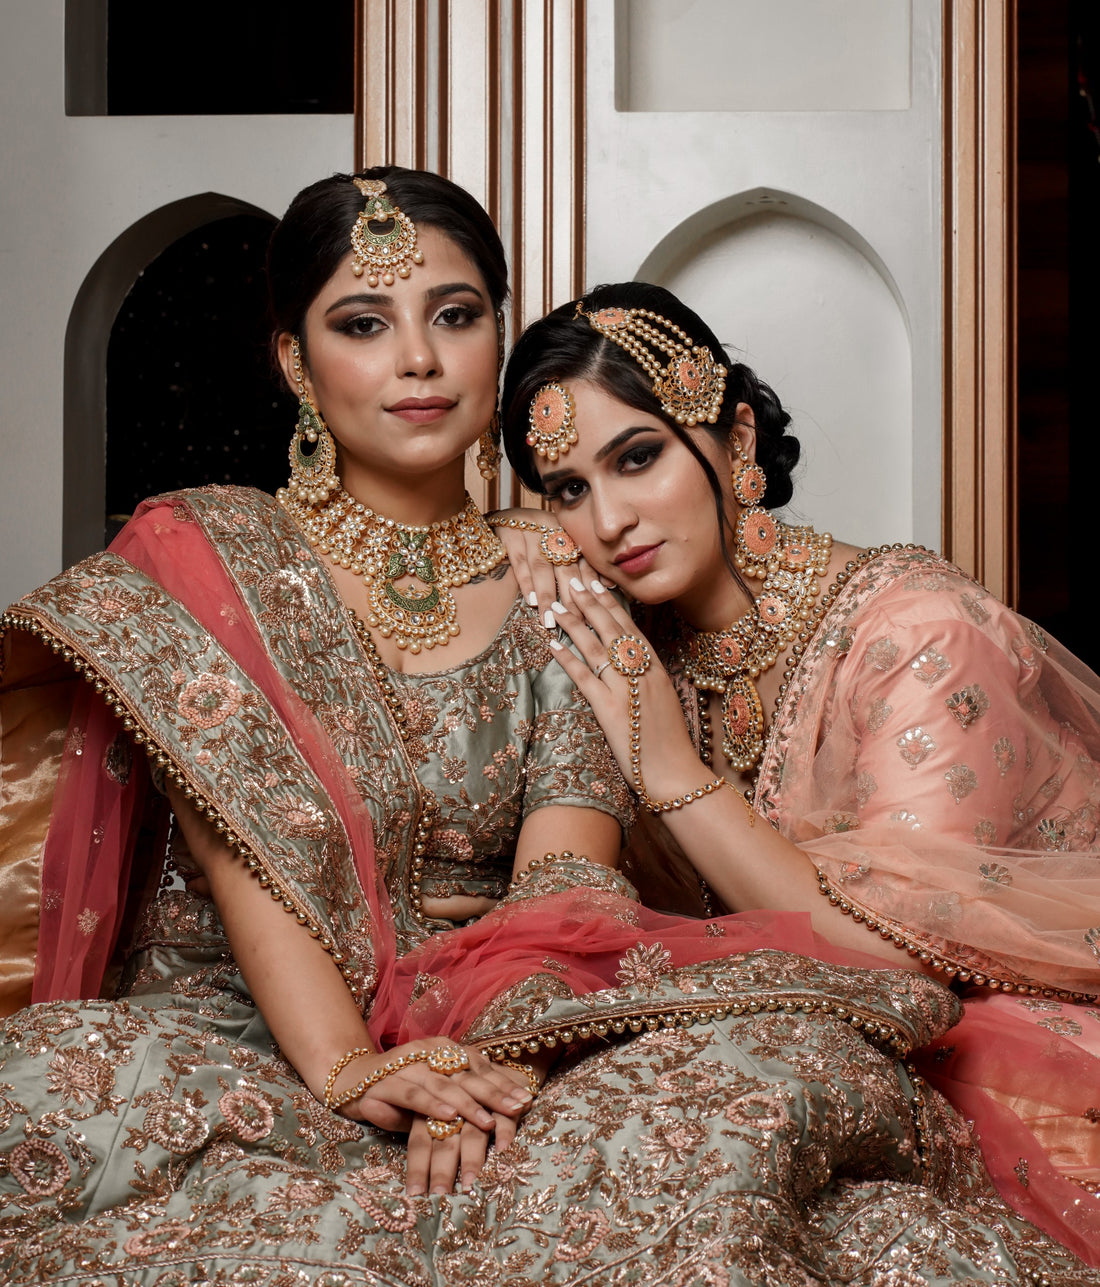 2 Brides wearing stylish jewellery